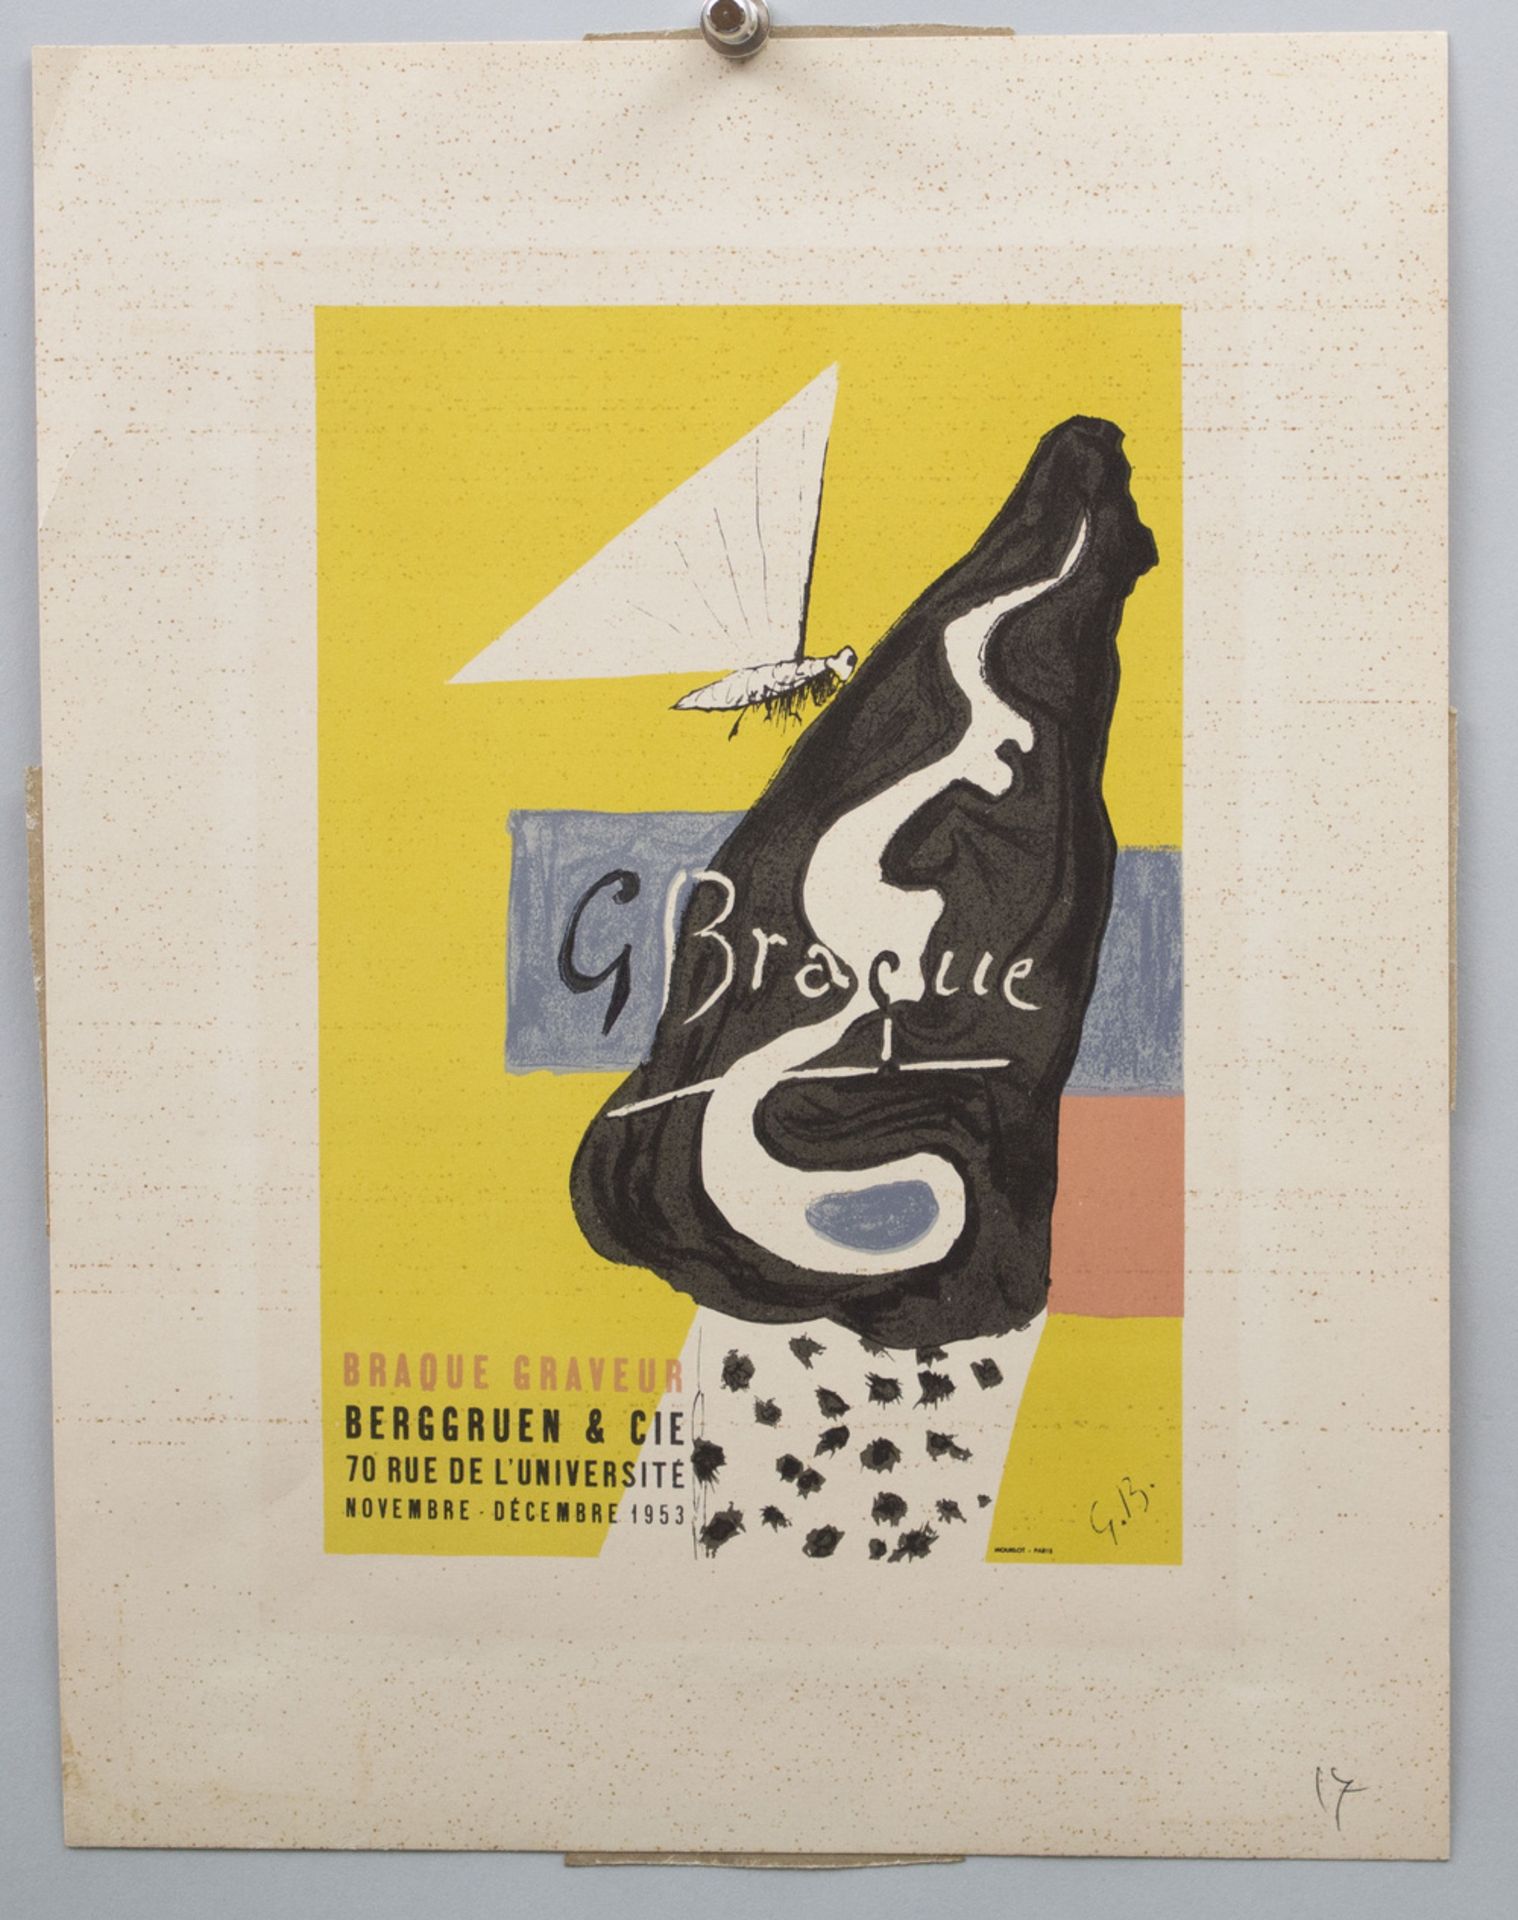 Georges BRAQUE (1882-1963), 'Ausstellungsplakat' / 'Exhibition poster', Berggruen & Cie, 1953